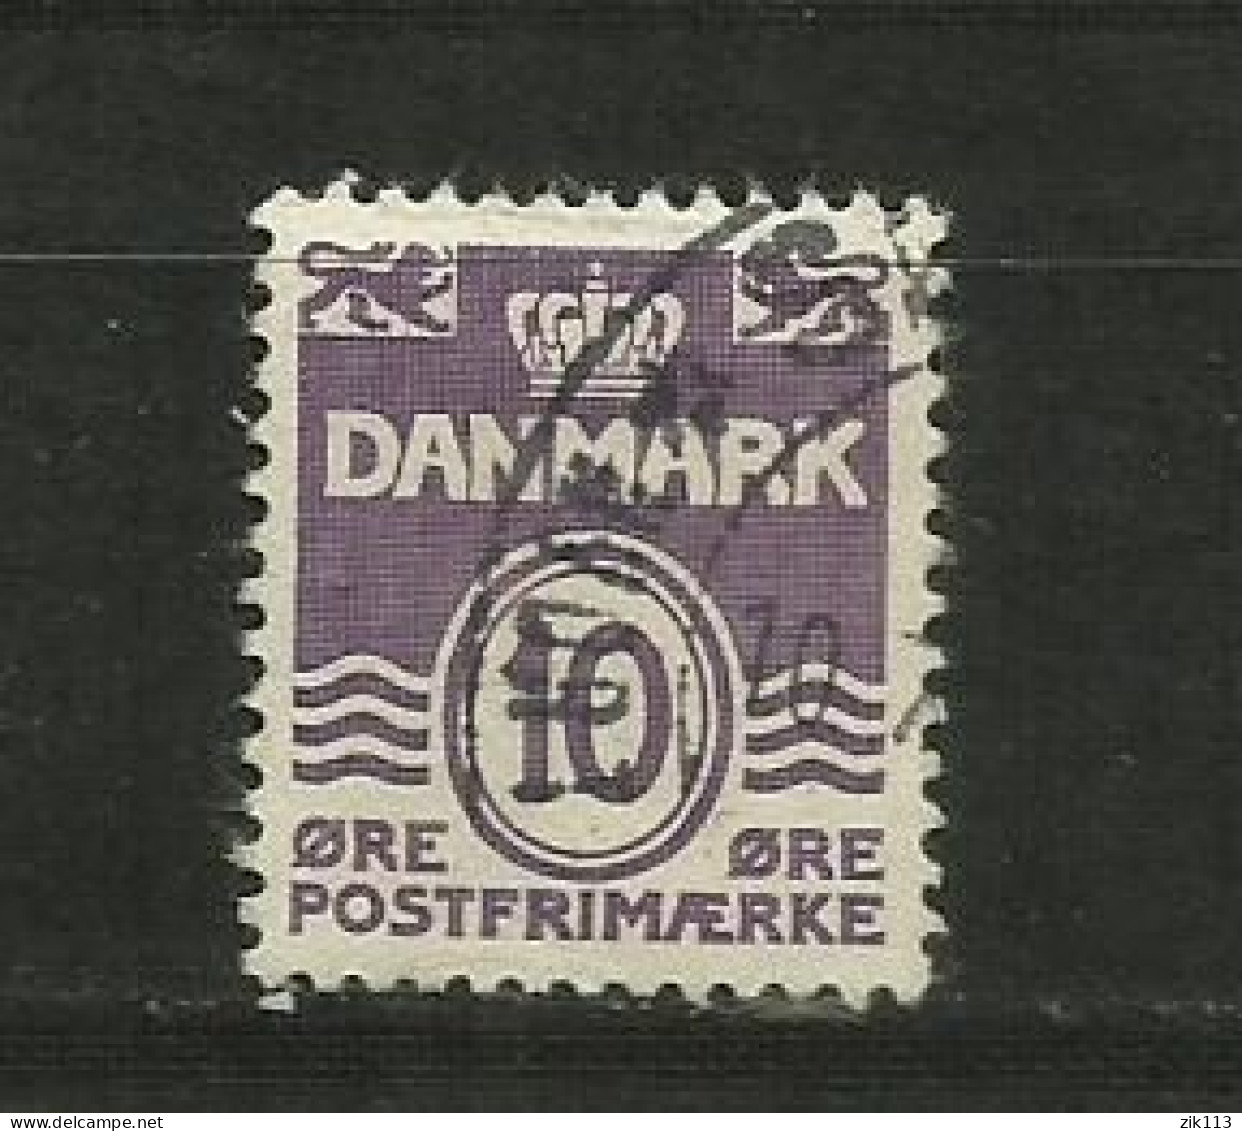 DENMARK  1938 - MI. 246 ,  USED - Usado